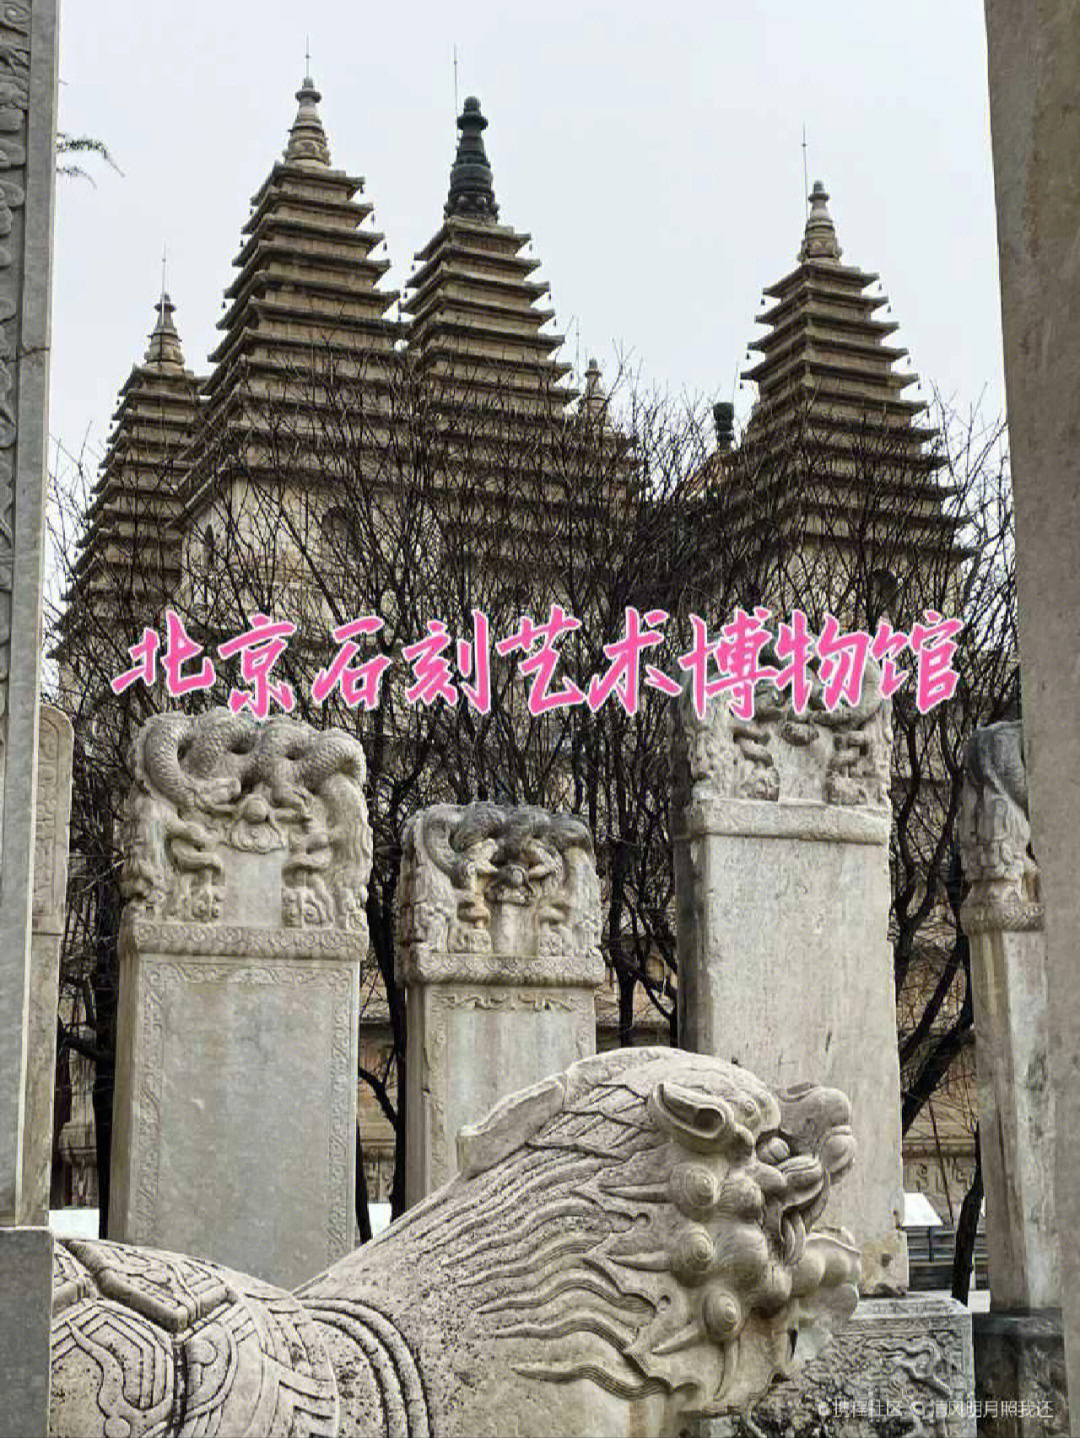 石刻艺术博物馆就位于北京动物园北侧的五塔寺内,至今已有500多年的